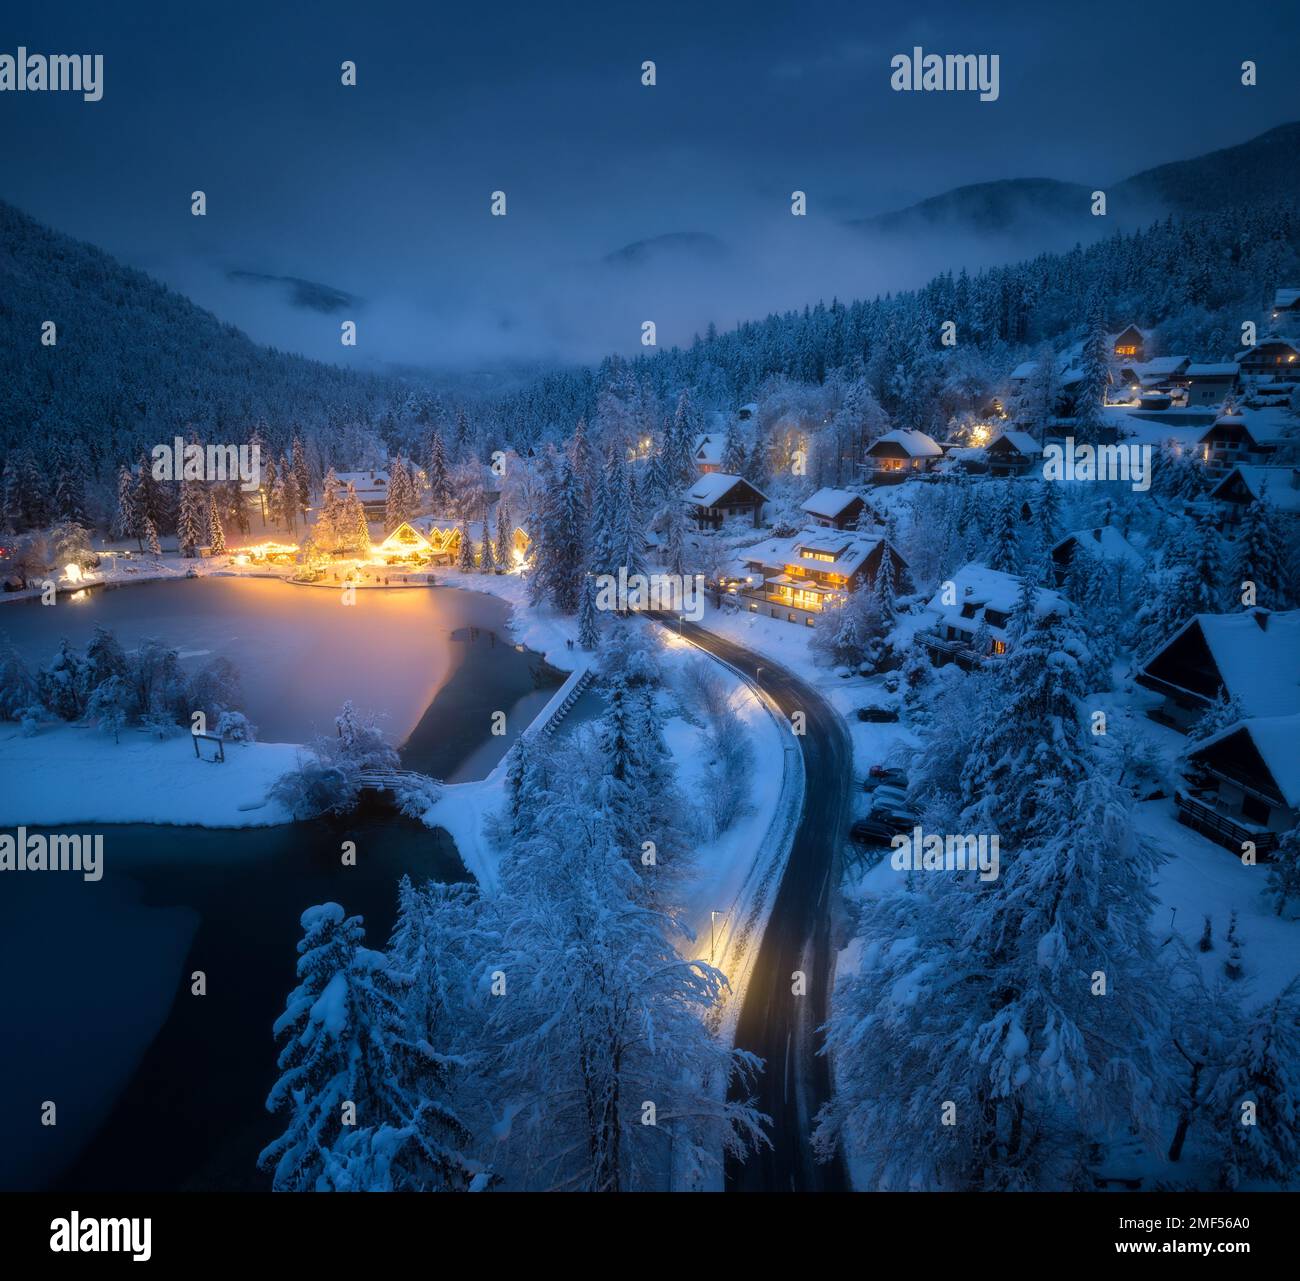 Vue aérienne de la ville dans la neige, la route, la forêt, le lac et les maisons Banque D'Images